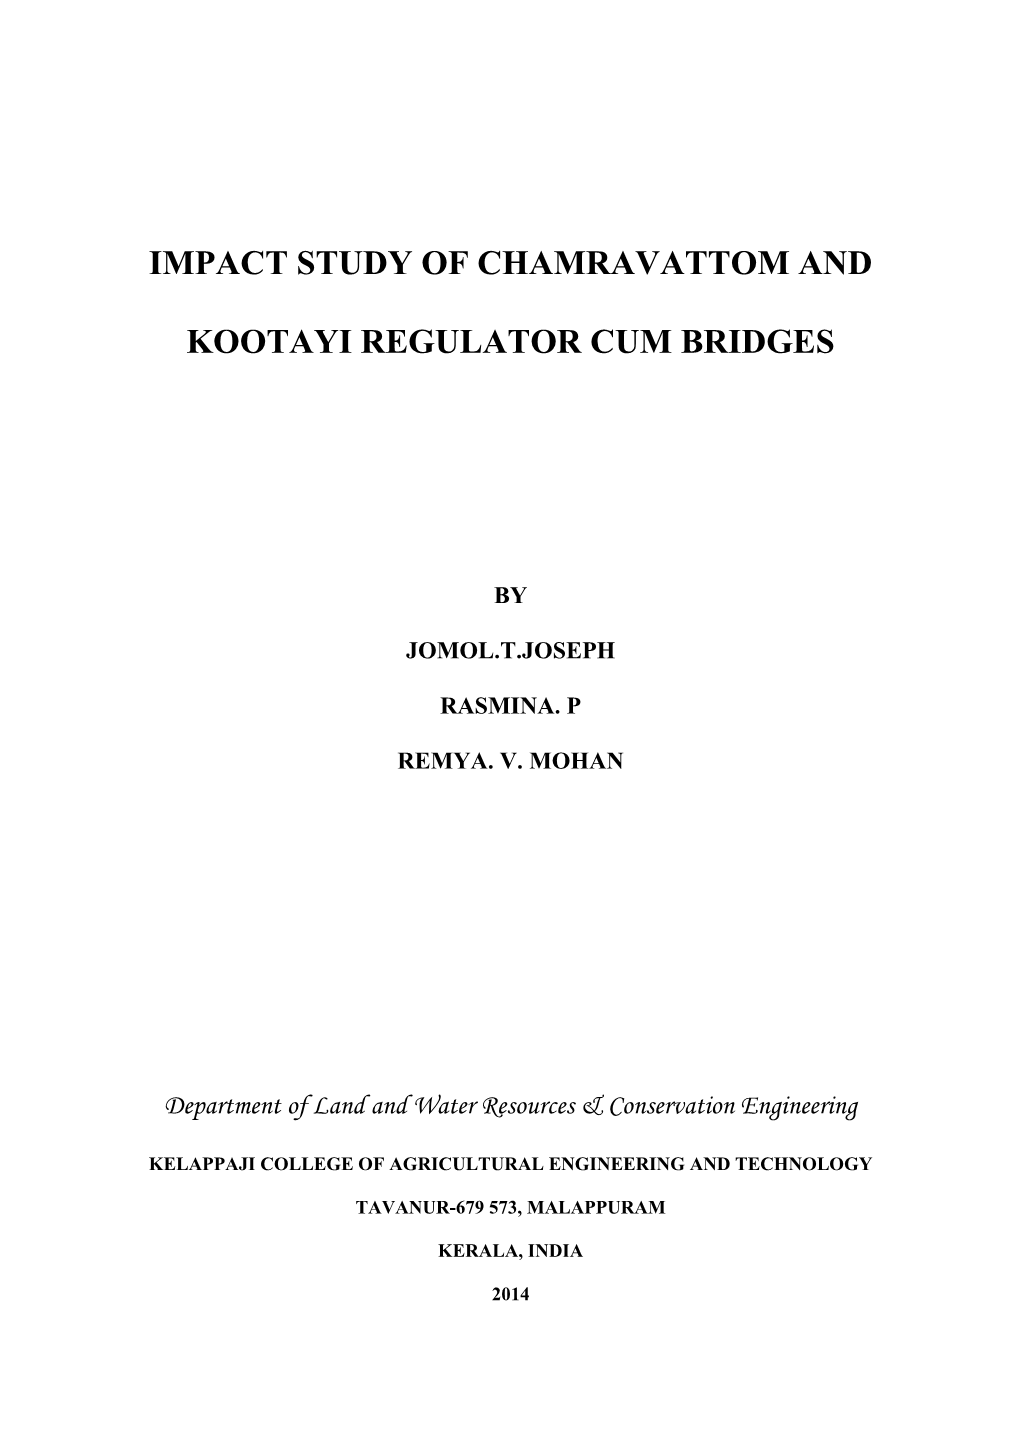 Impact Study of Chamravattom and Kootayi